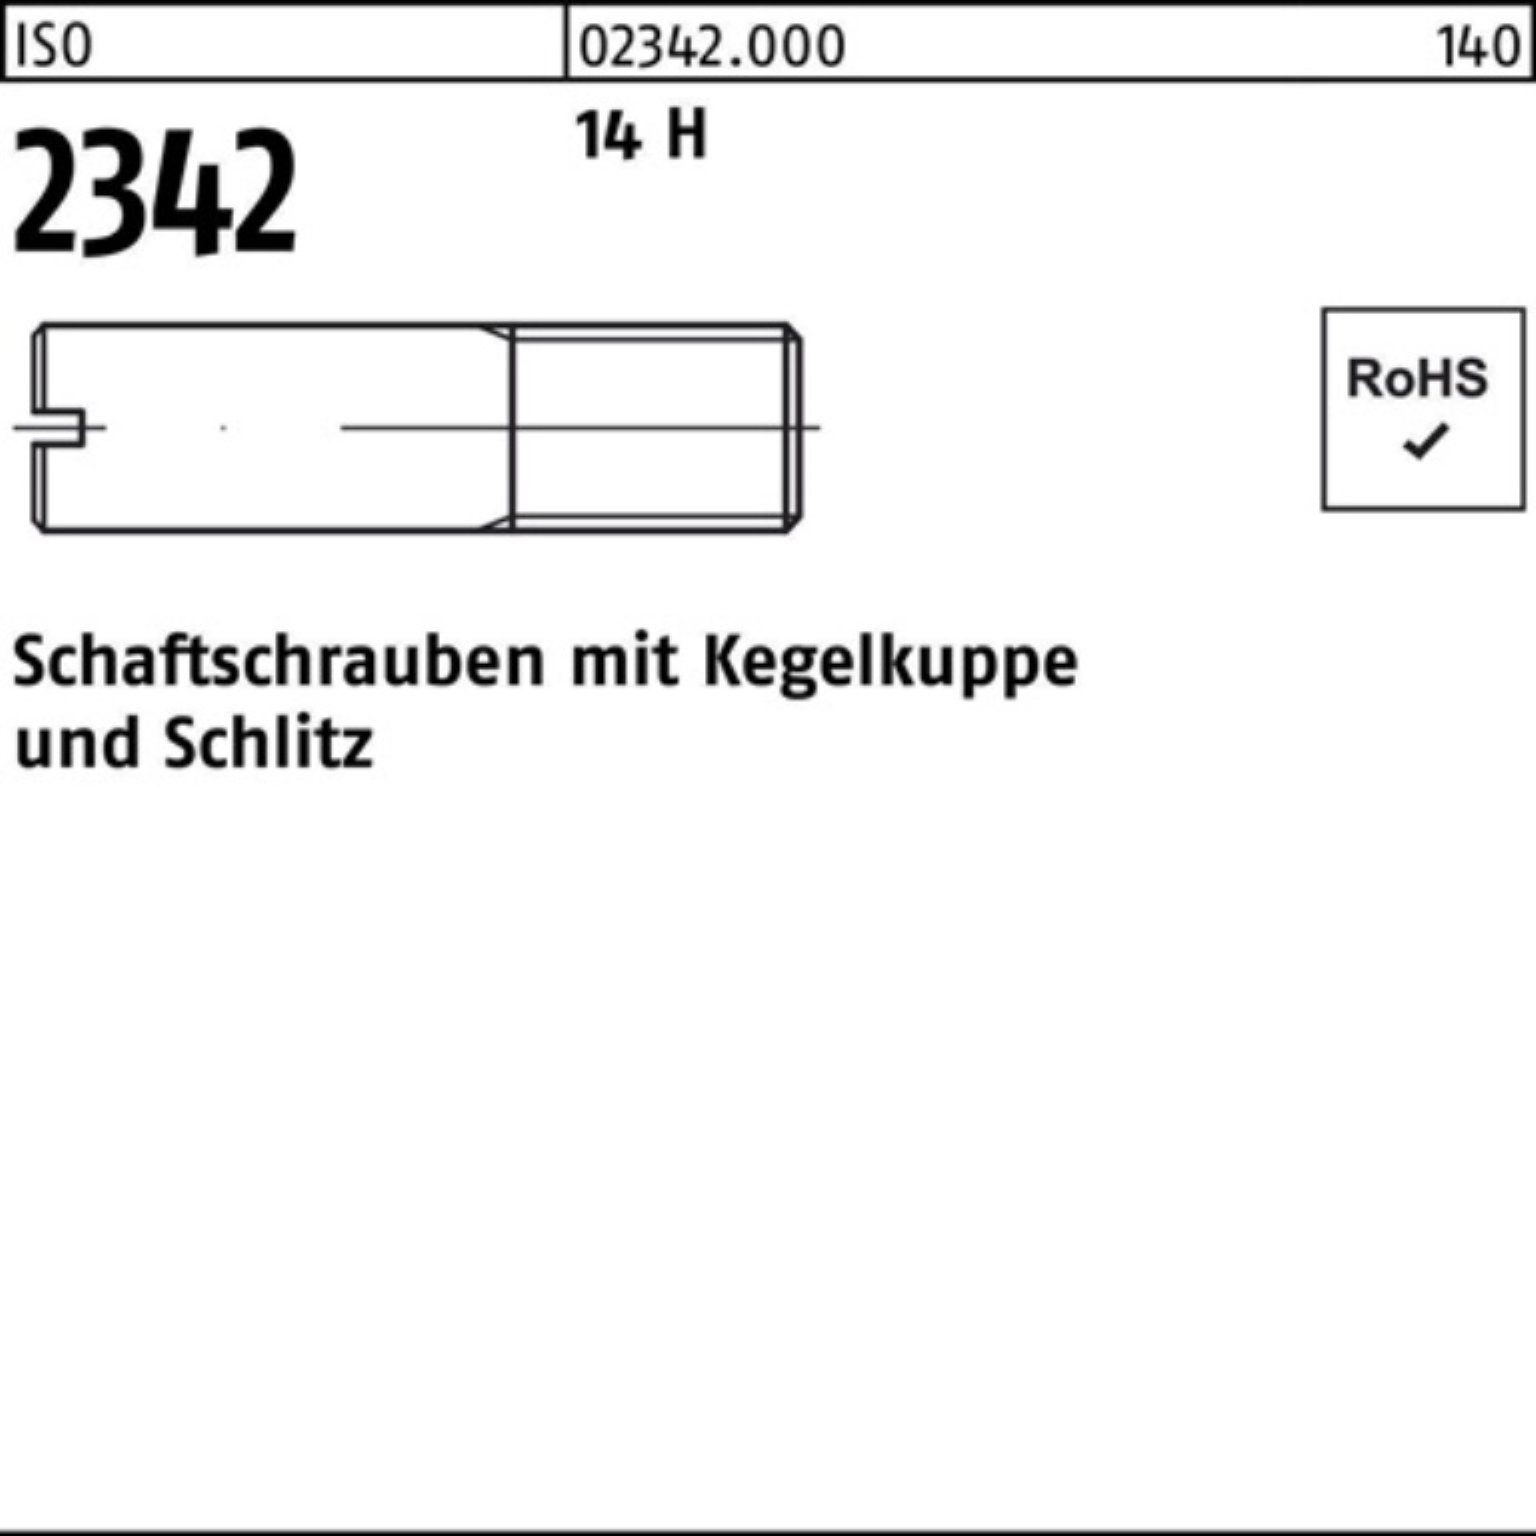 Reyher Schraube 100er Pack Schaftschraube Kegelkuppe/Schlitz 14 ISO 35 H 100 2342 M5x